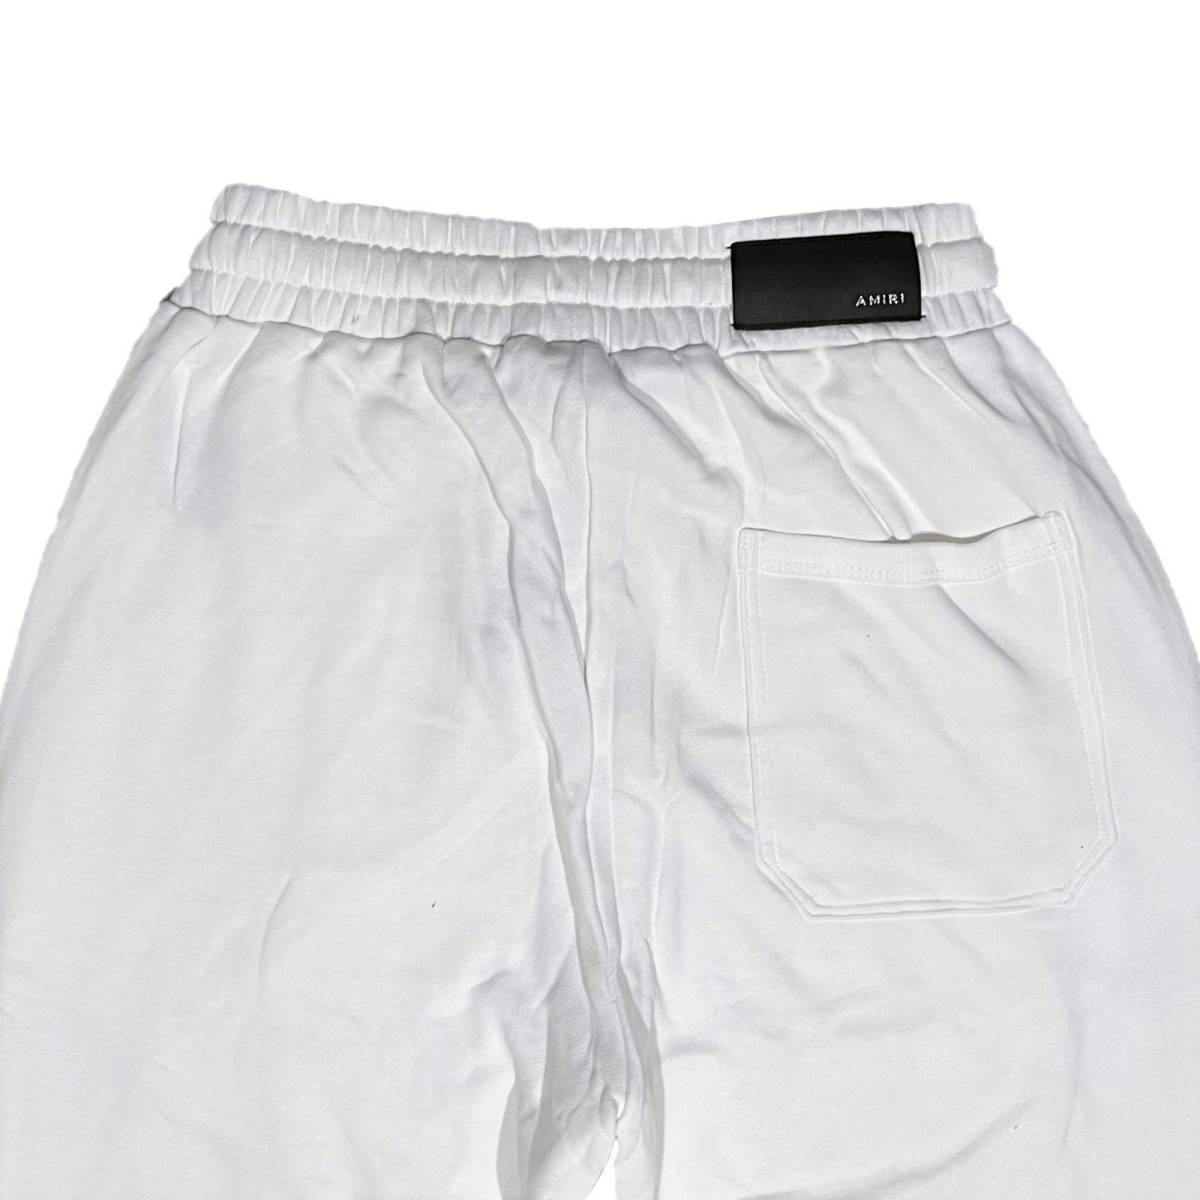 【翌日発送可能】 アミリ AMIRI [並行輸入品] Zoltar (L) (ホワイト) スウェットパンツ PANTS SWEAT ロゴ L